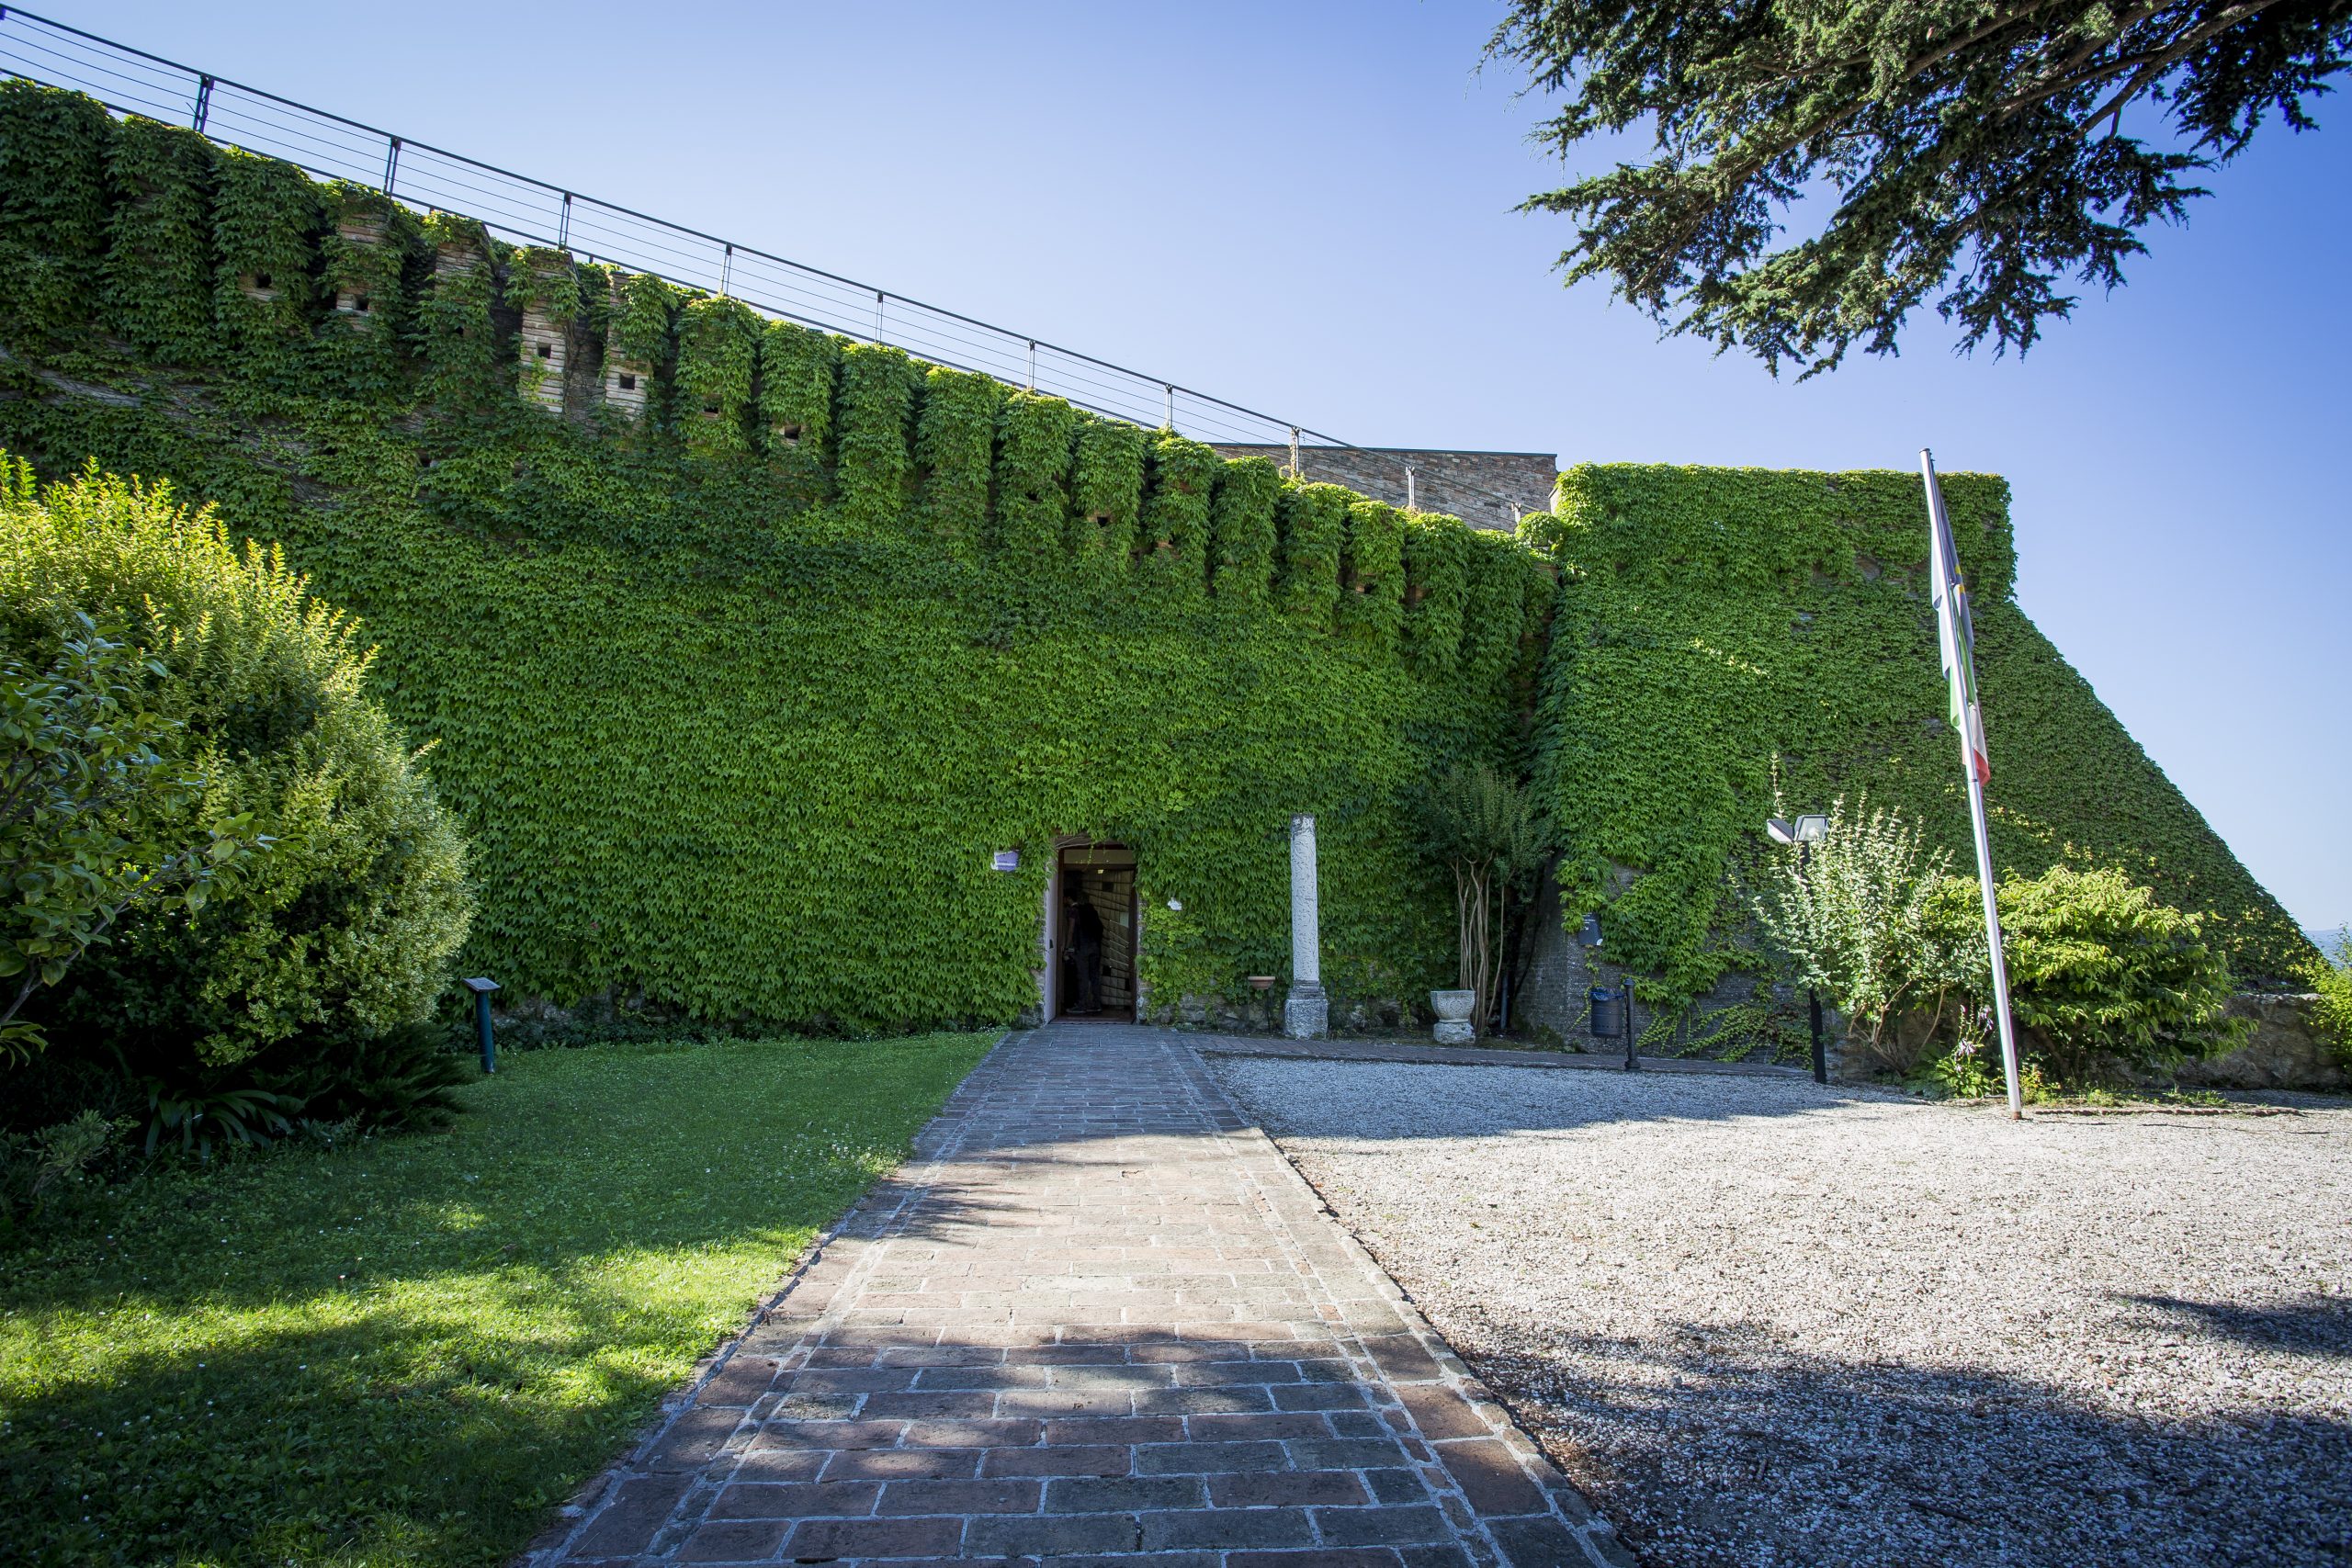 Esc - Bertinoro - Rocca - Garden